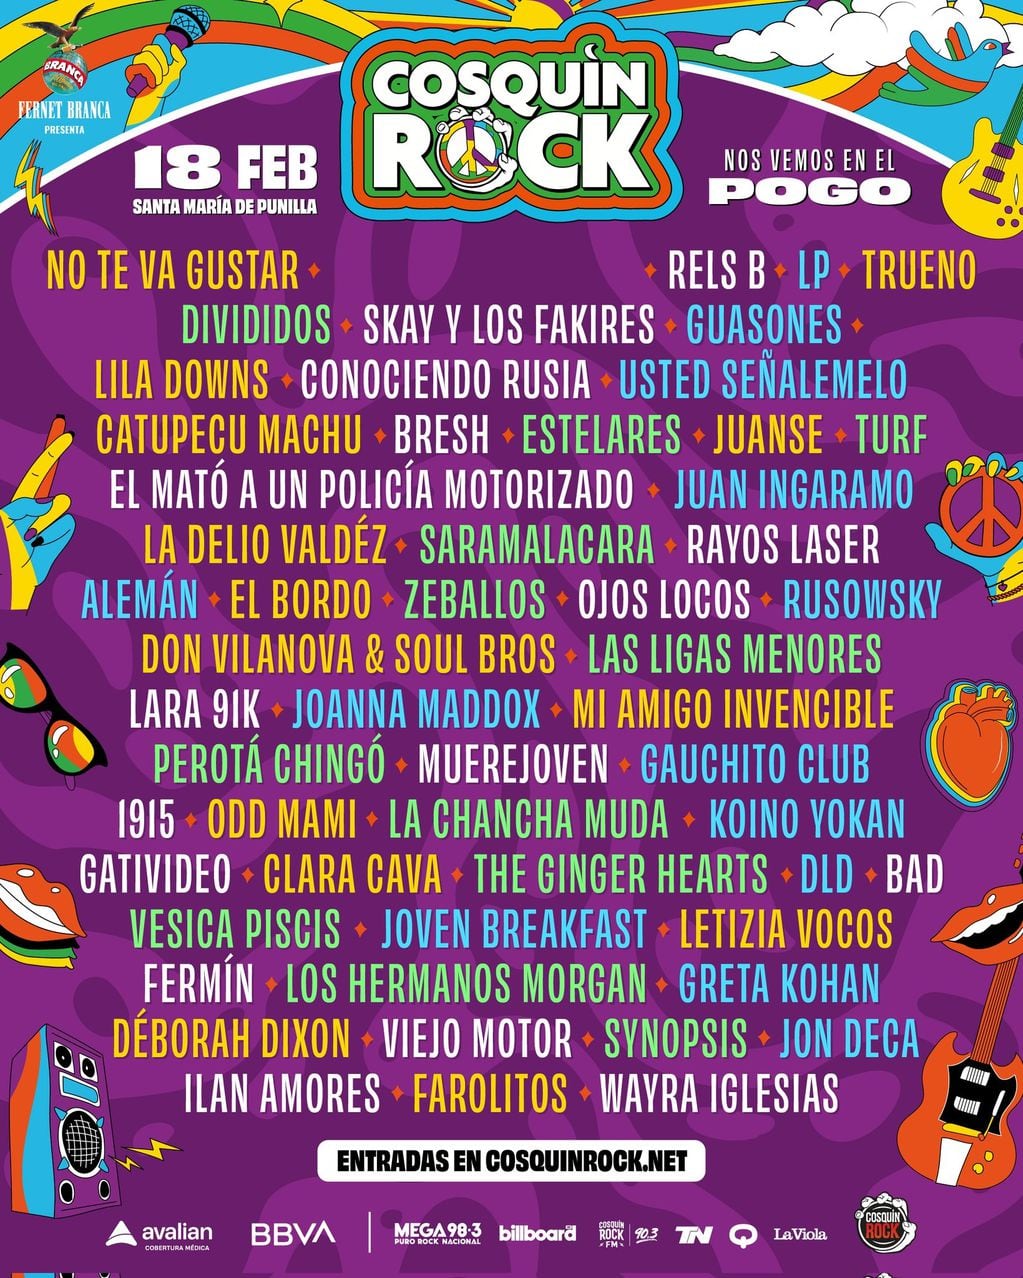 Grilla de artistas Cosquín Rock 2023 - 18 de febrero